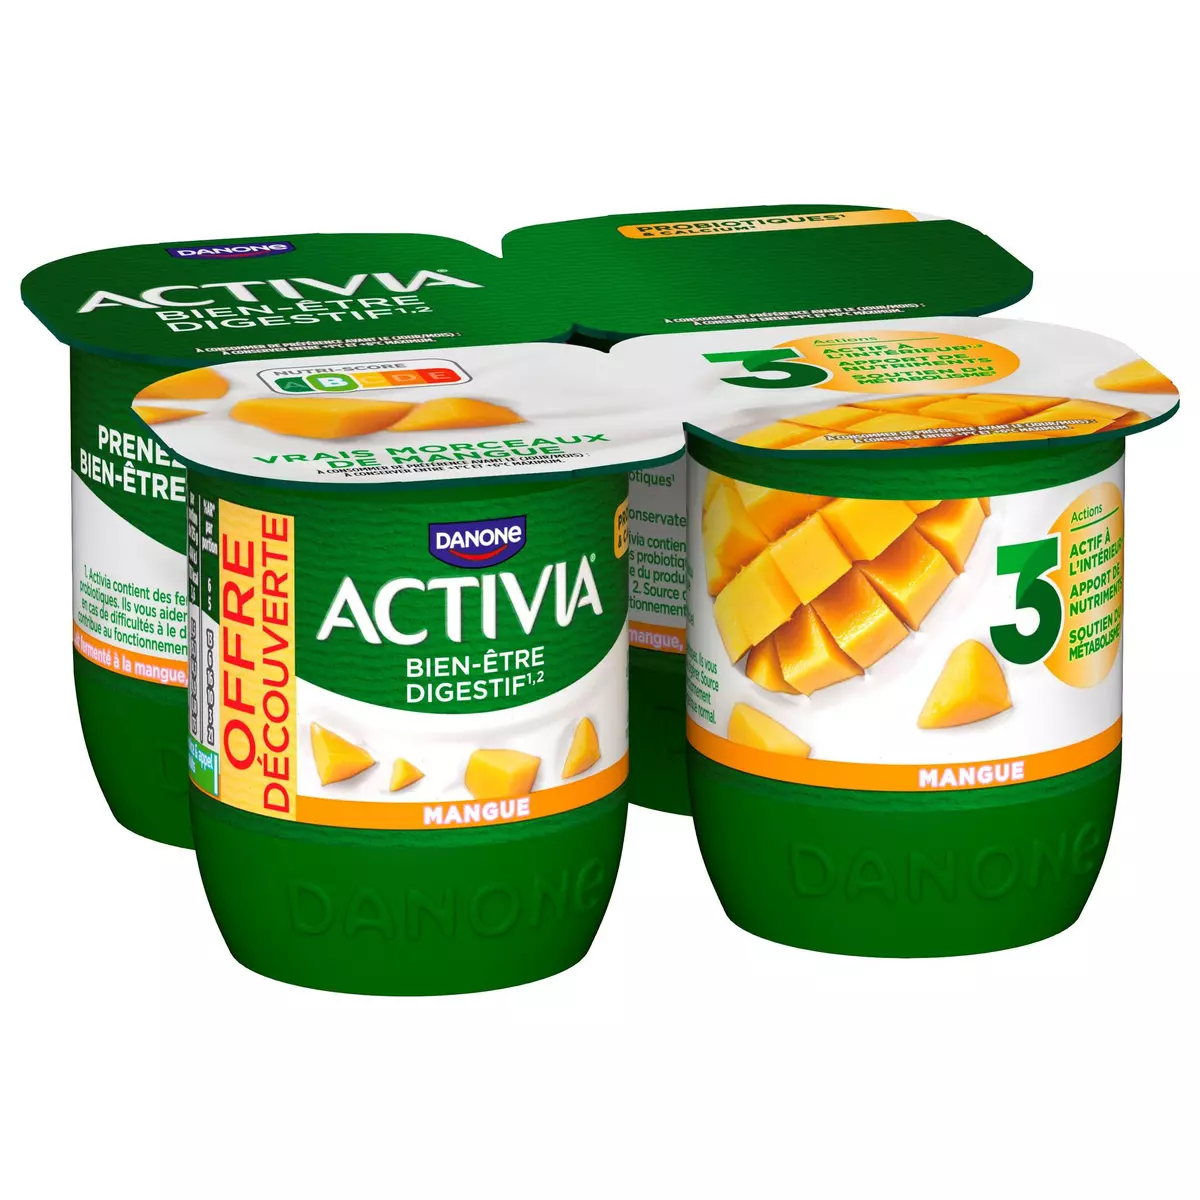 ACTIVIA Probiotiques - Yaourt au bifidus à la mangue 4x125g